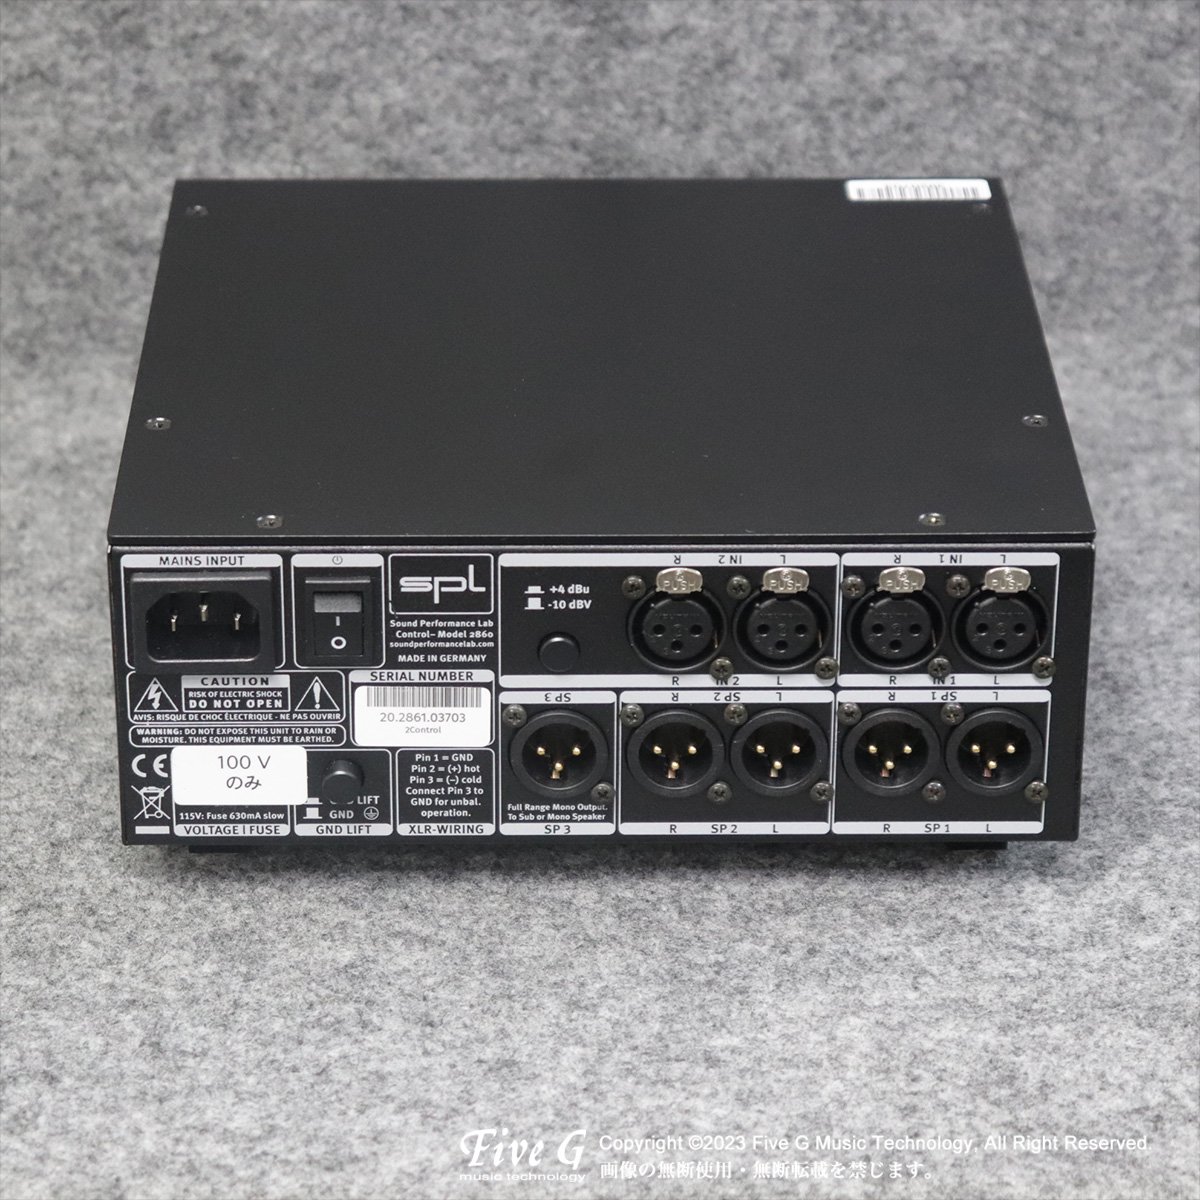 SPL 2Control 業務用モニターコントローラー 高品質ヘッドフォンアンプ - レコーディング/PA機器